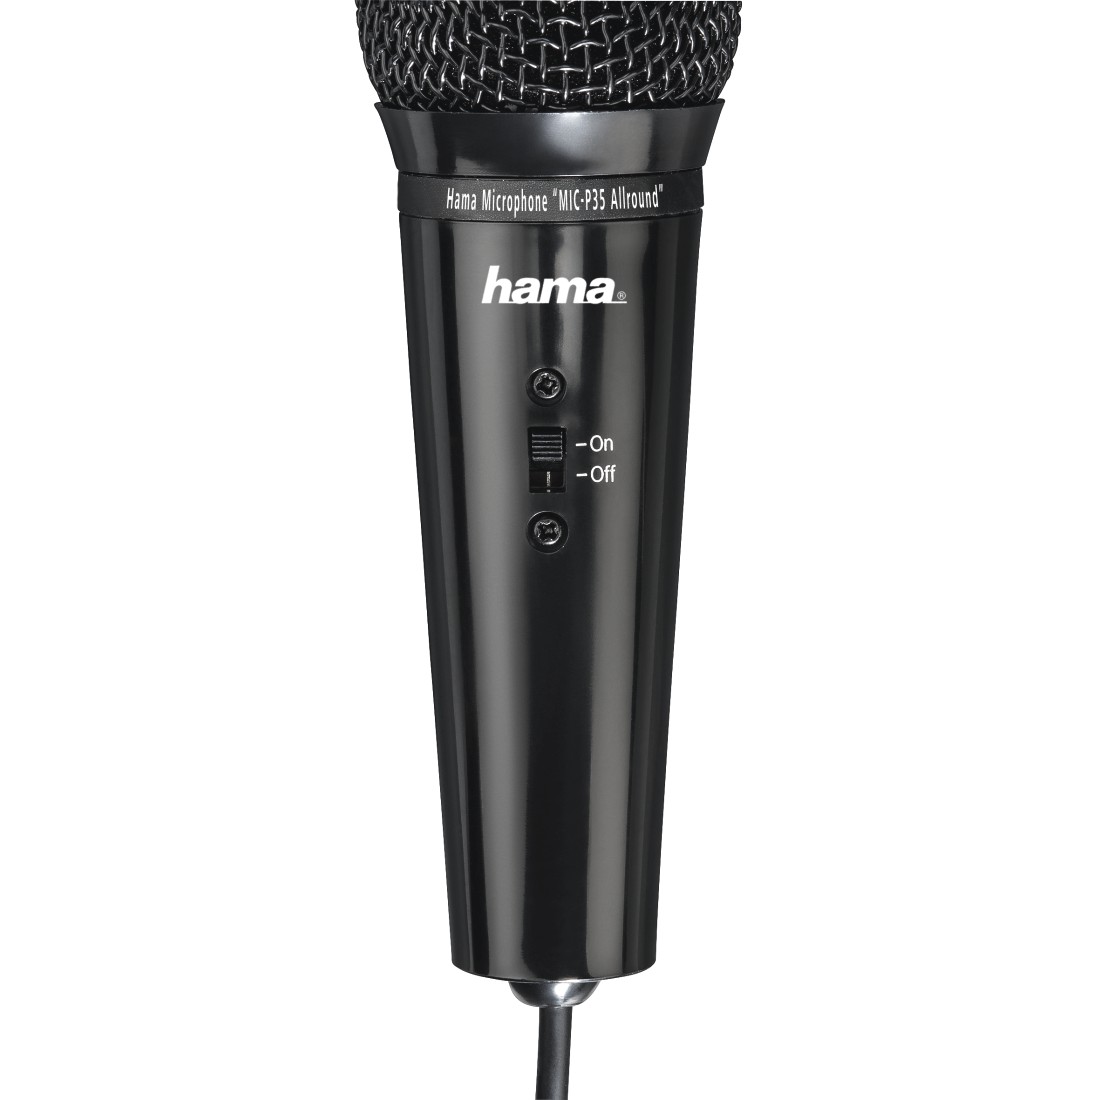 00139905 Hama Mikrofon "MIC-P35 Allround" für PC und Notebook, 3,5-mm-Klinke